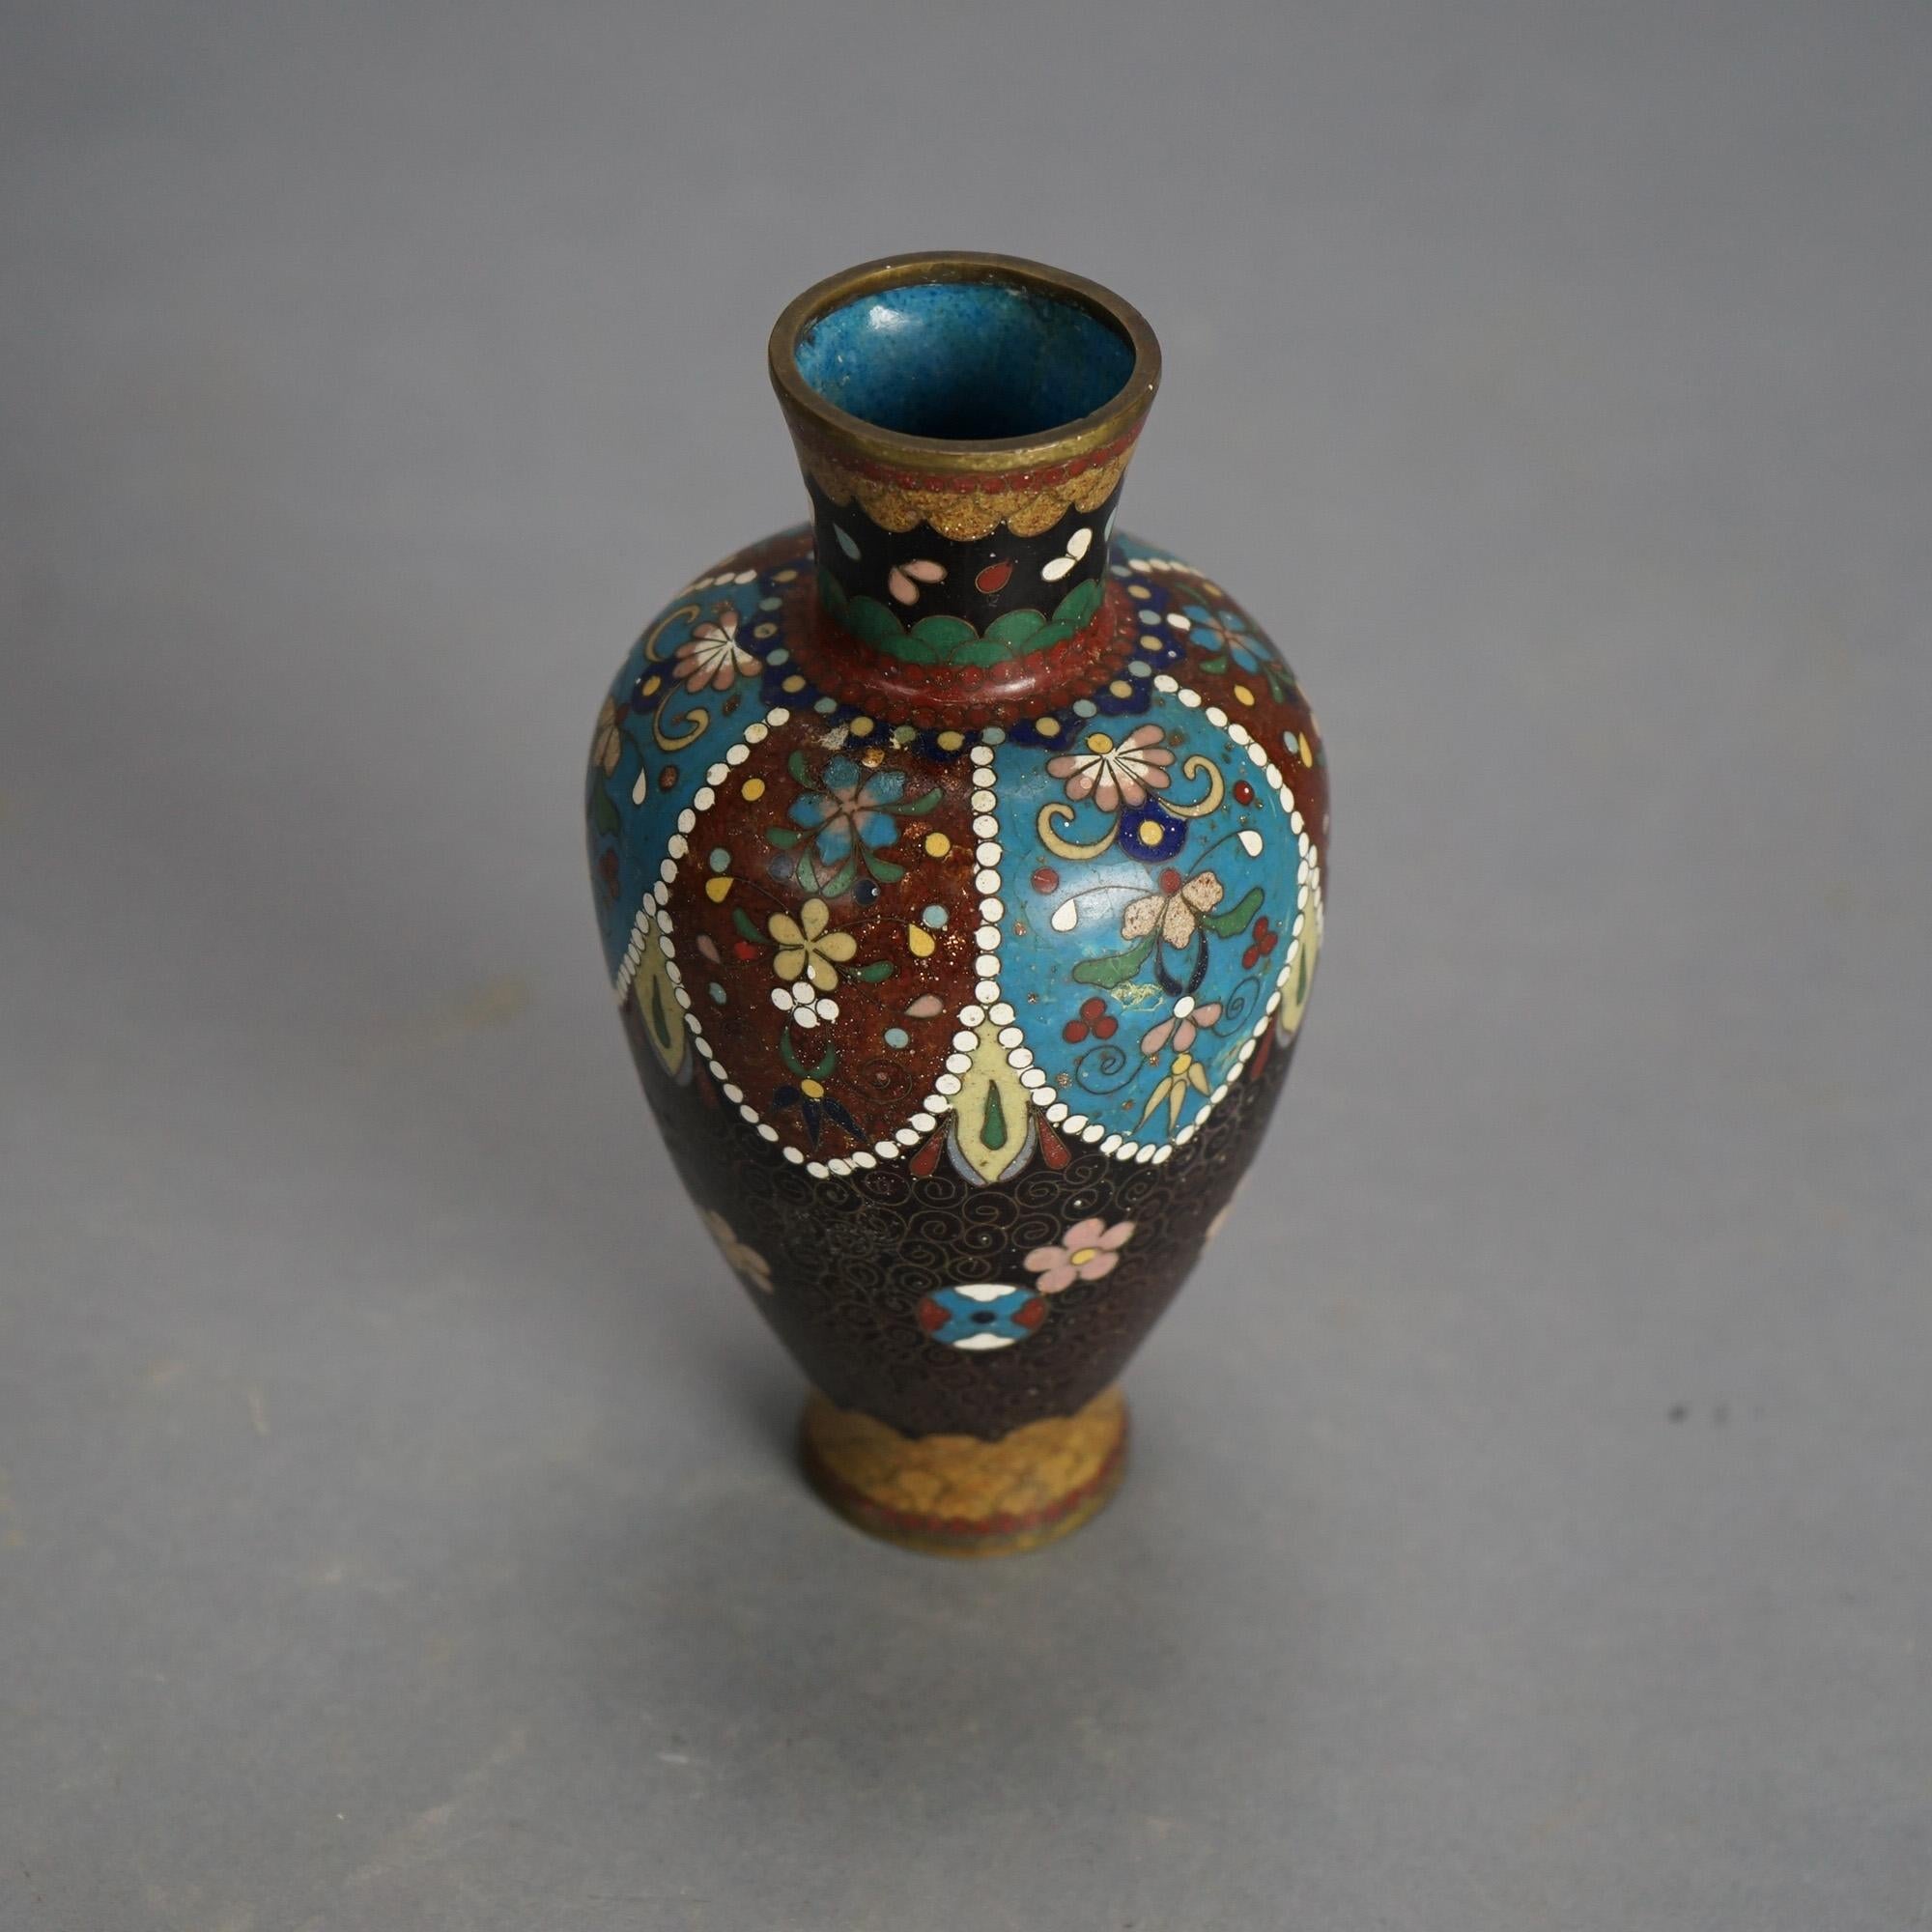 Sept vases chinois anciens émaillés cloisonnés C1920

Dimensions - 3,5 